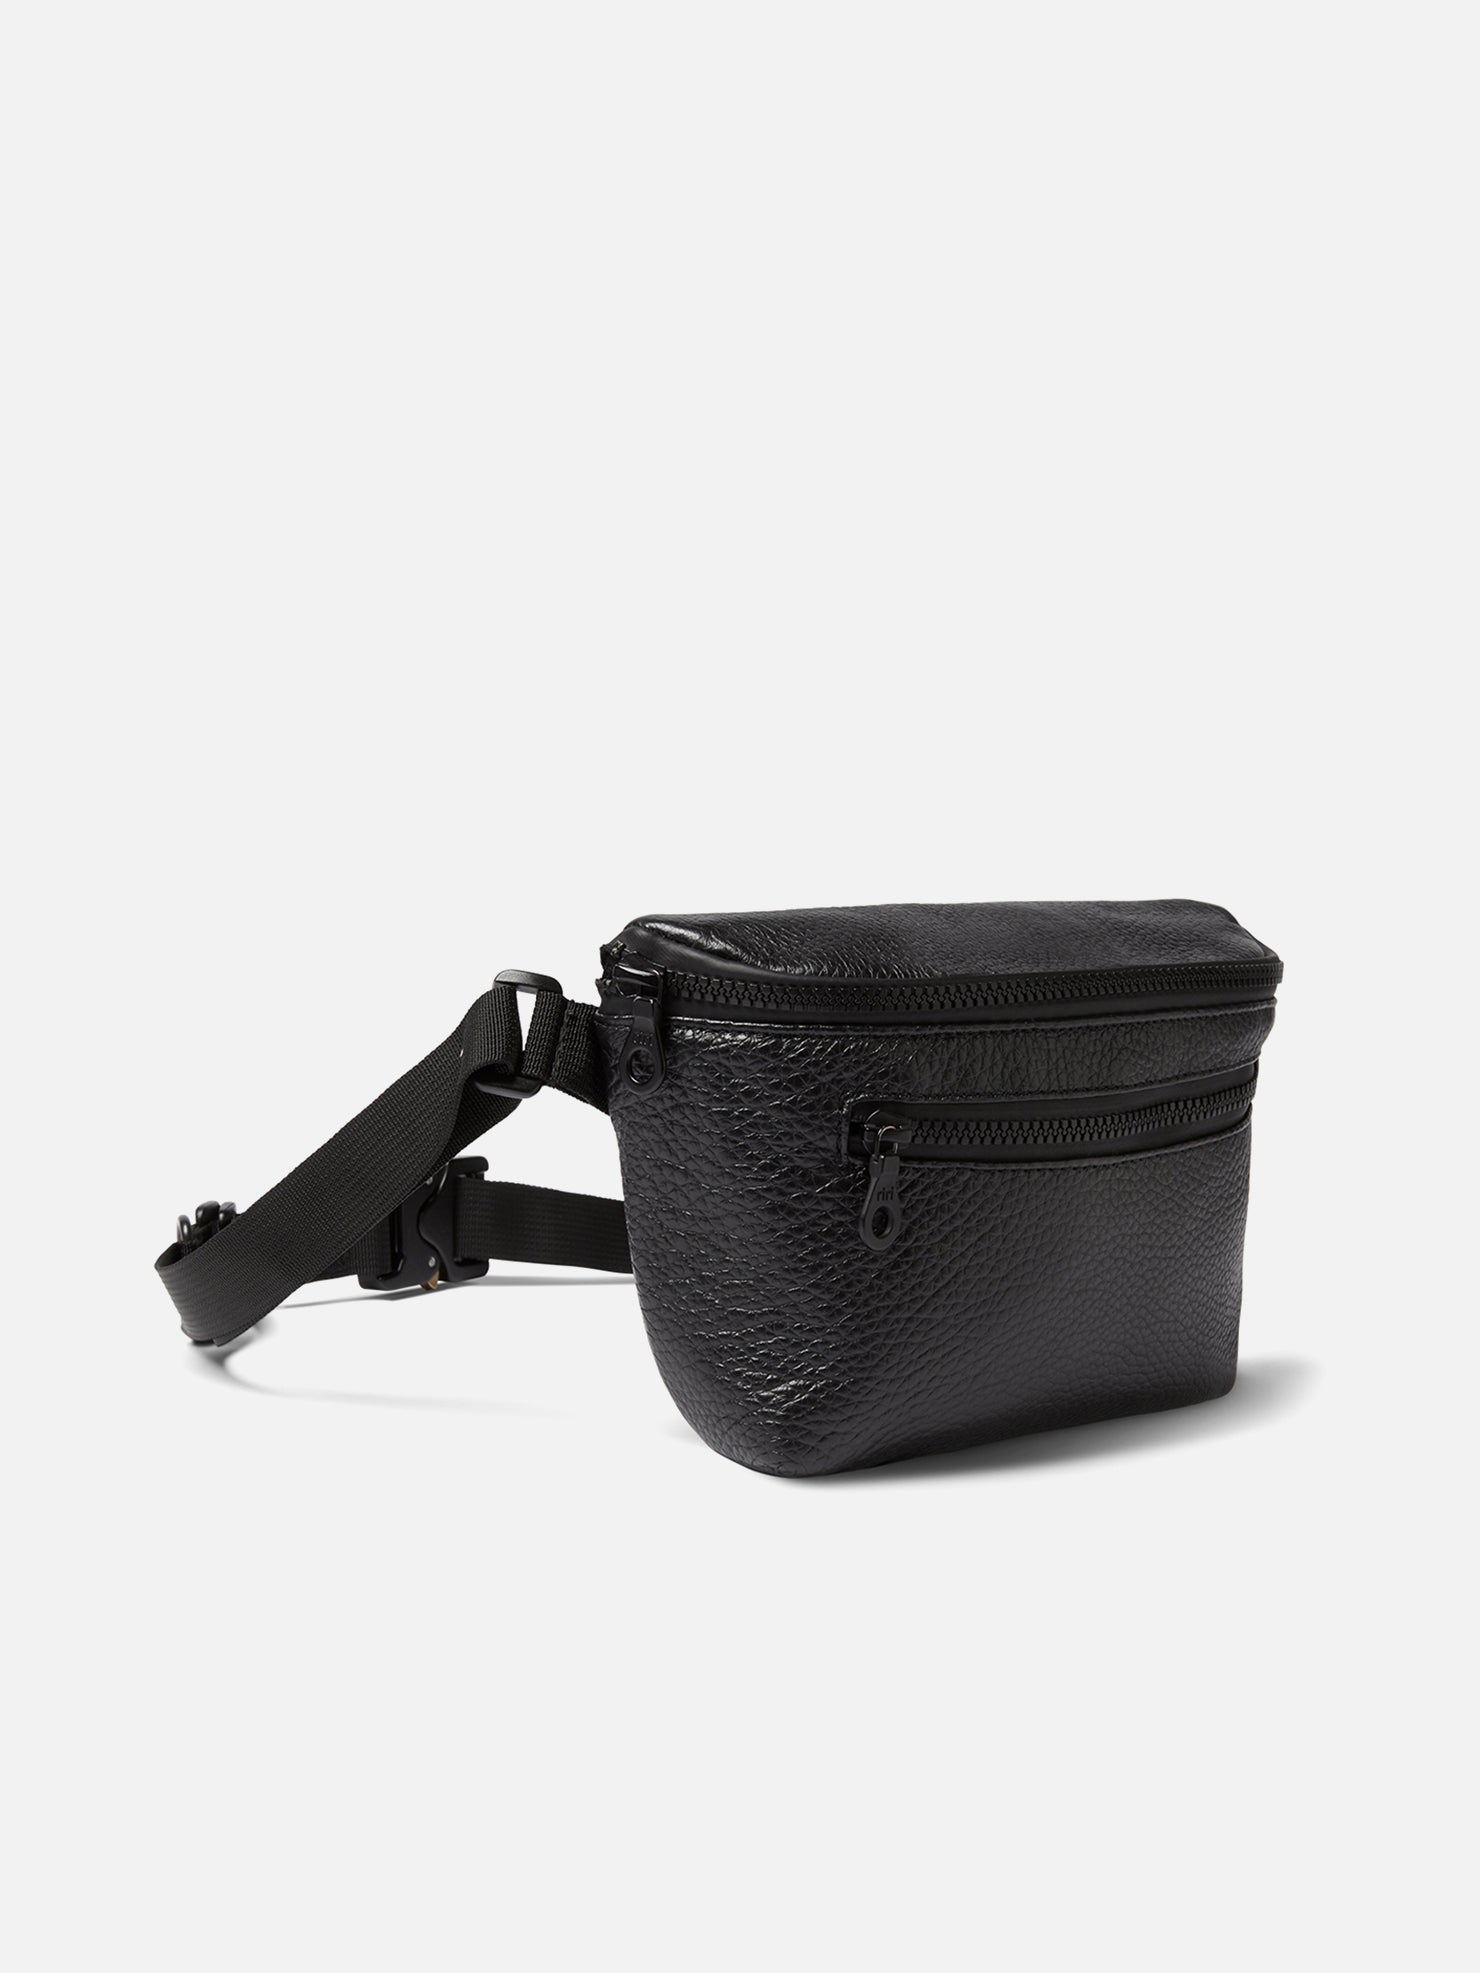 UTILITY BELT BAG 2.0 | KILLSPENCER® - Black Leather